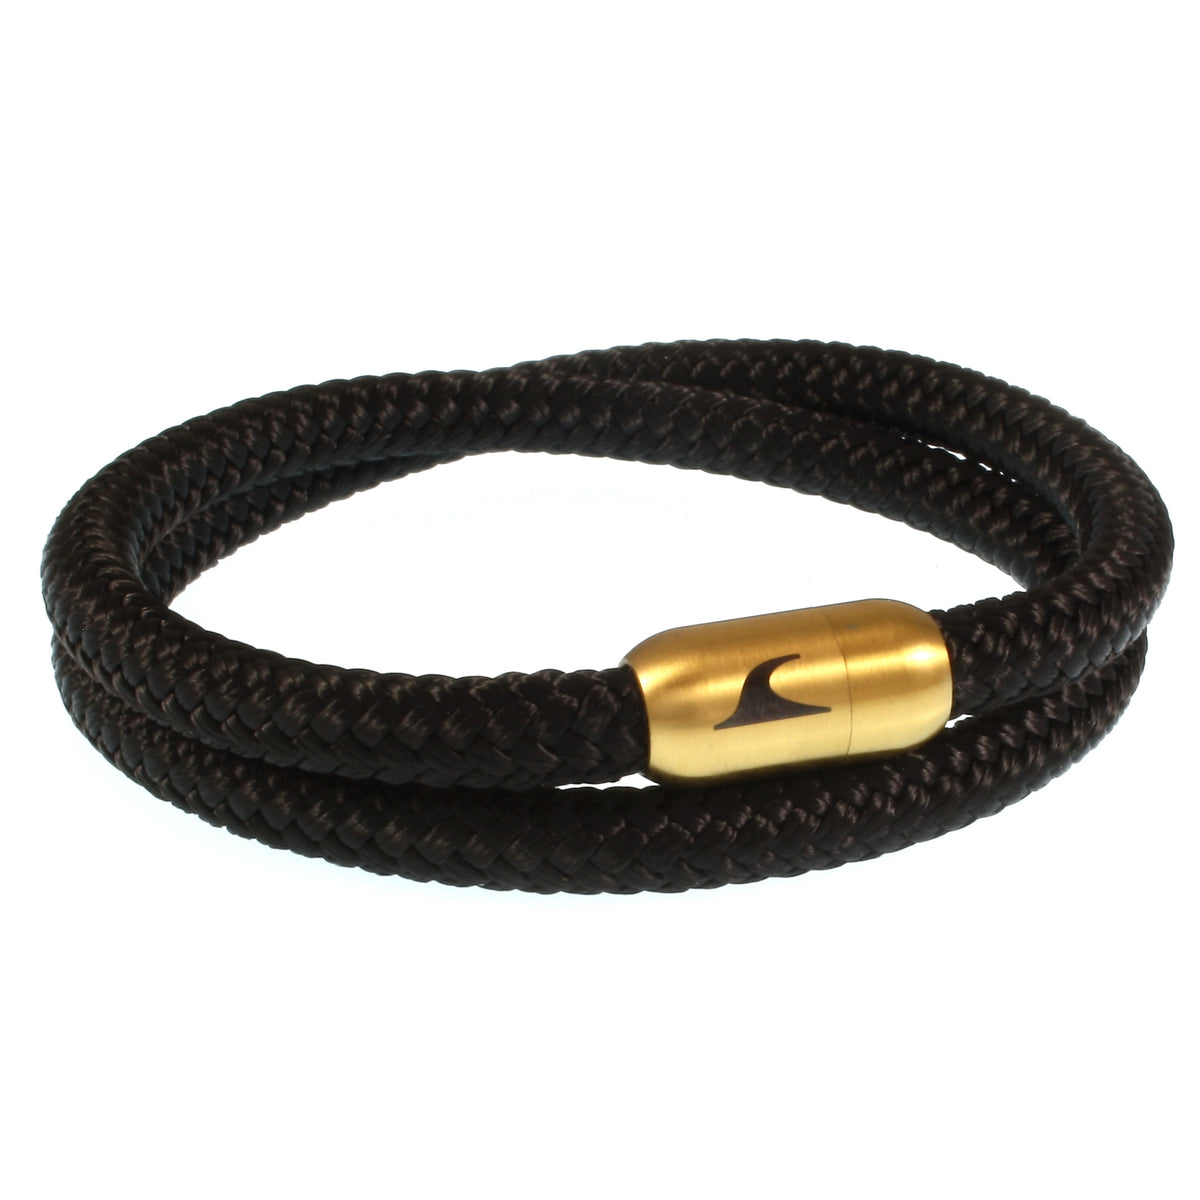 Herren-Segeltau-Armband-hawaii-schwarz-gold-Edelstahlverschluss-vorn-wavepirate-shop-st  1810 × 1810 Pixel